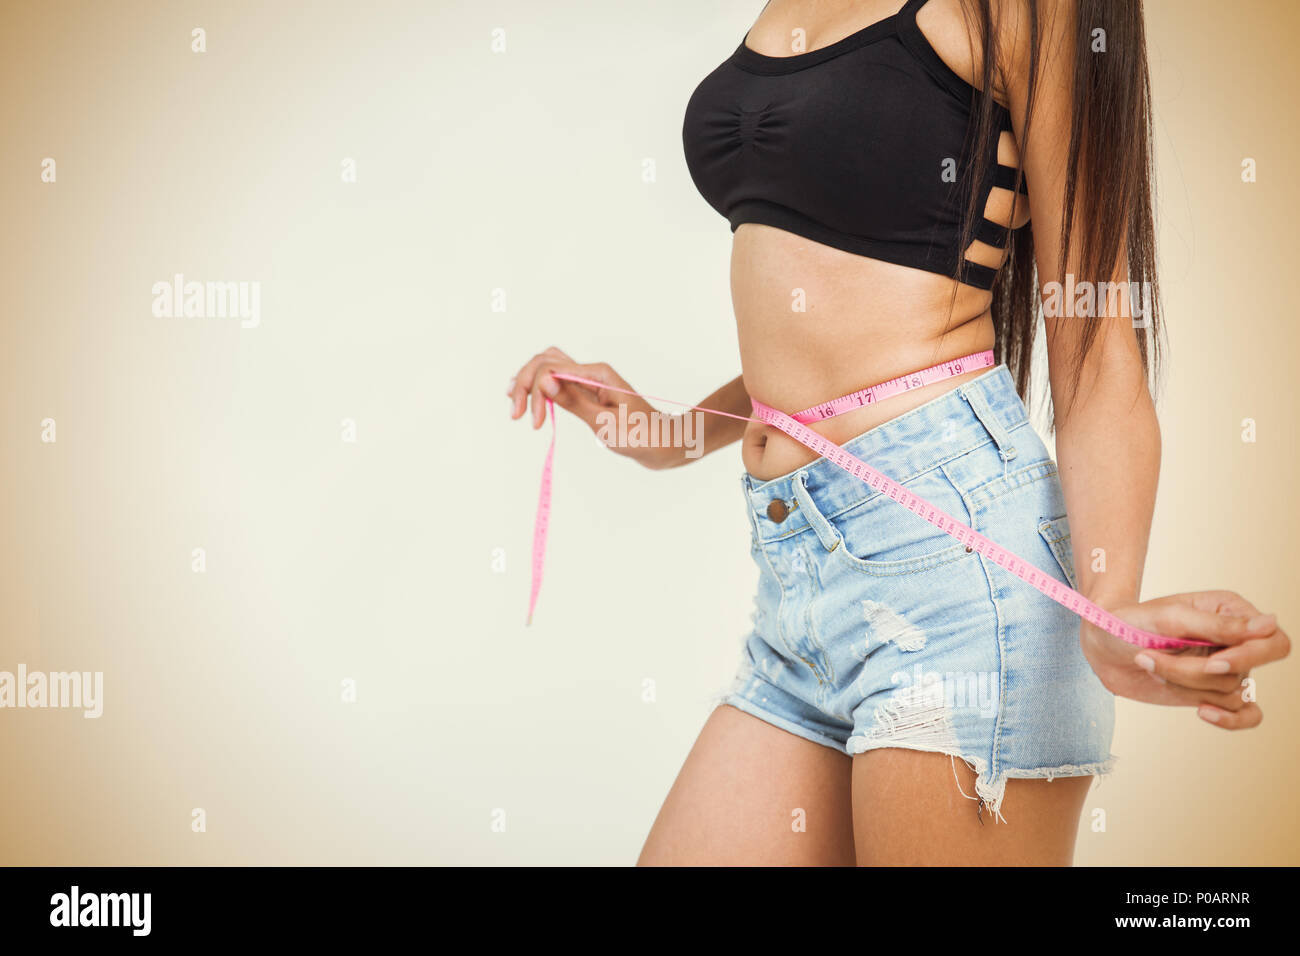 medir la cintura por la cinta. mujer joven con cuerpo delgado y ropa de  yoga está en casa 8237590 Foto de stock en Vecteezy